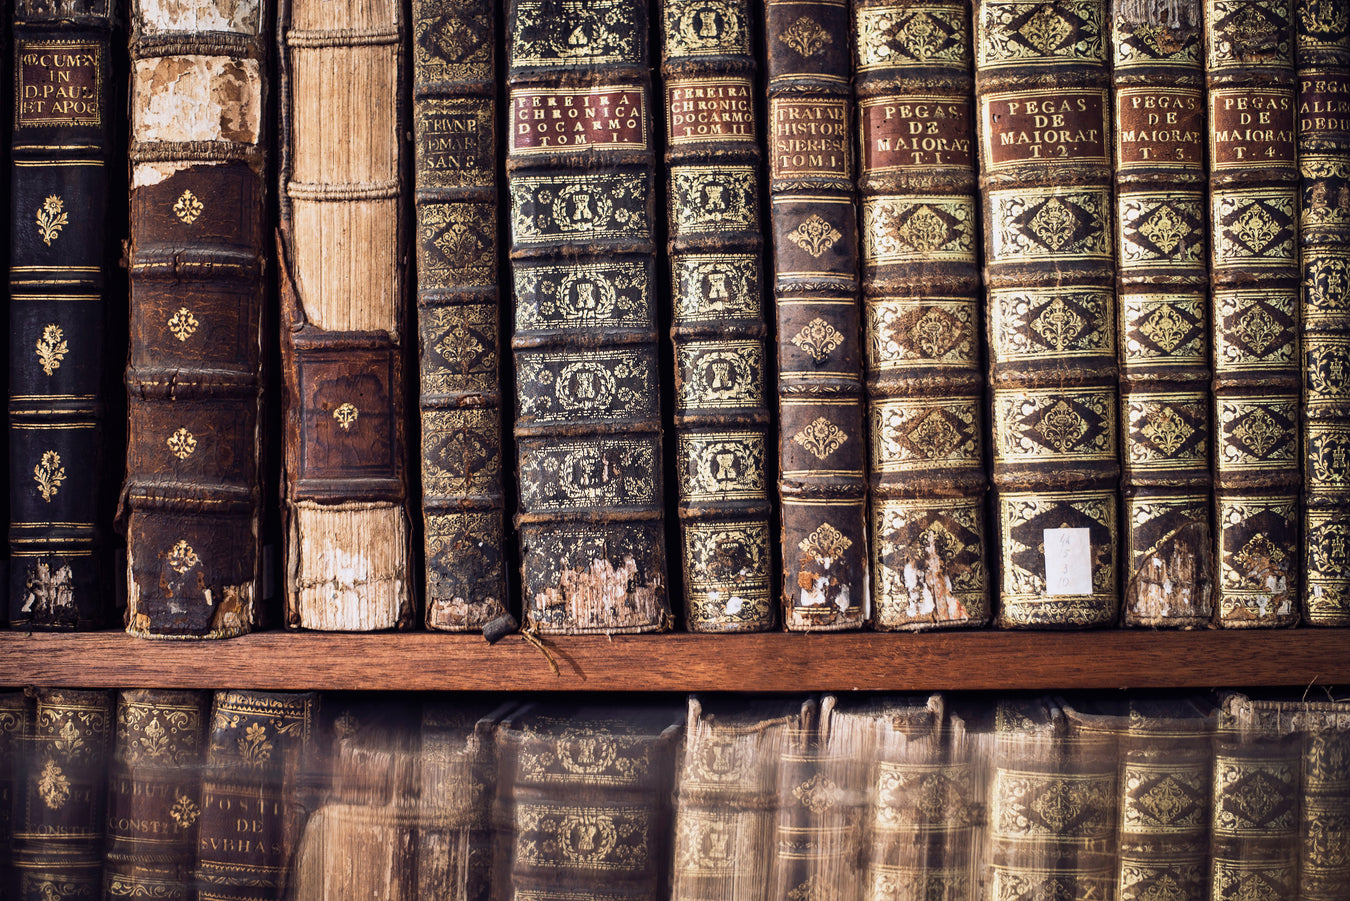 Libros antiguos, raros y desaparecidos